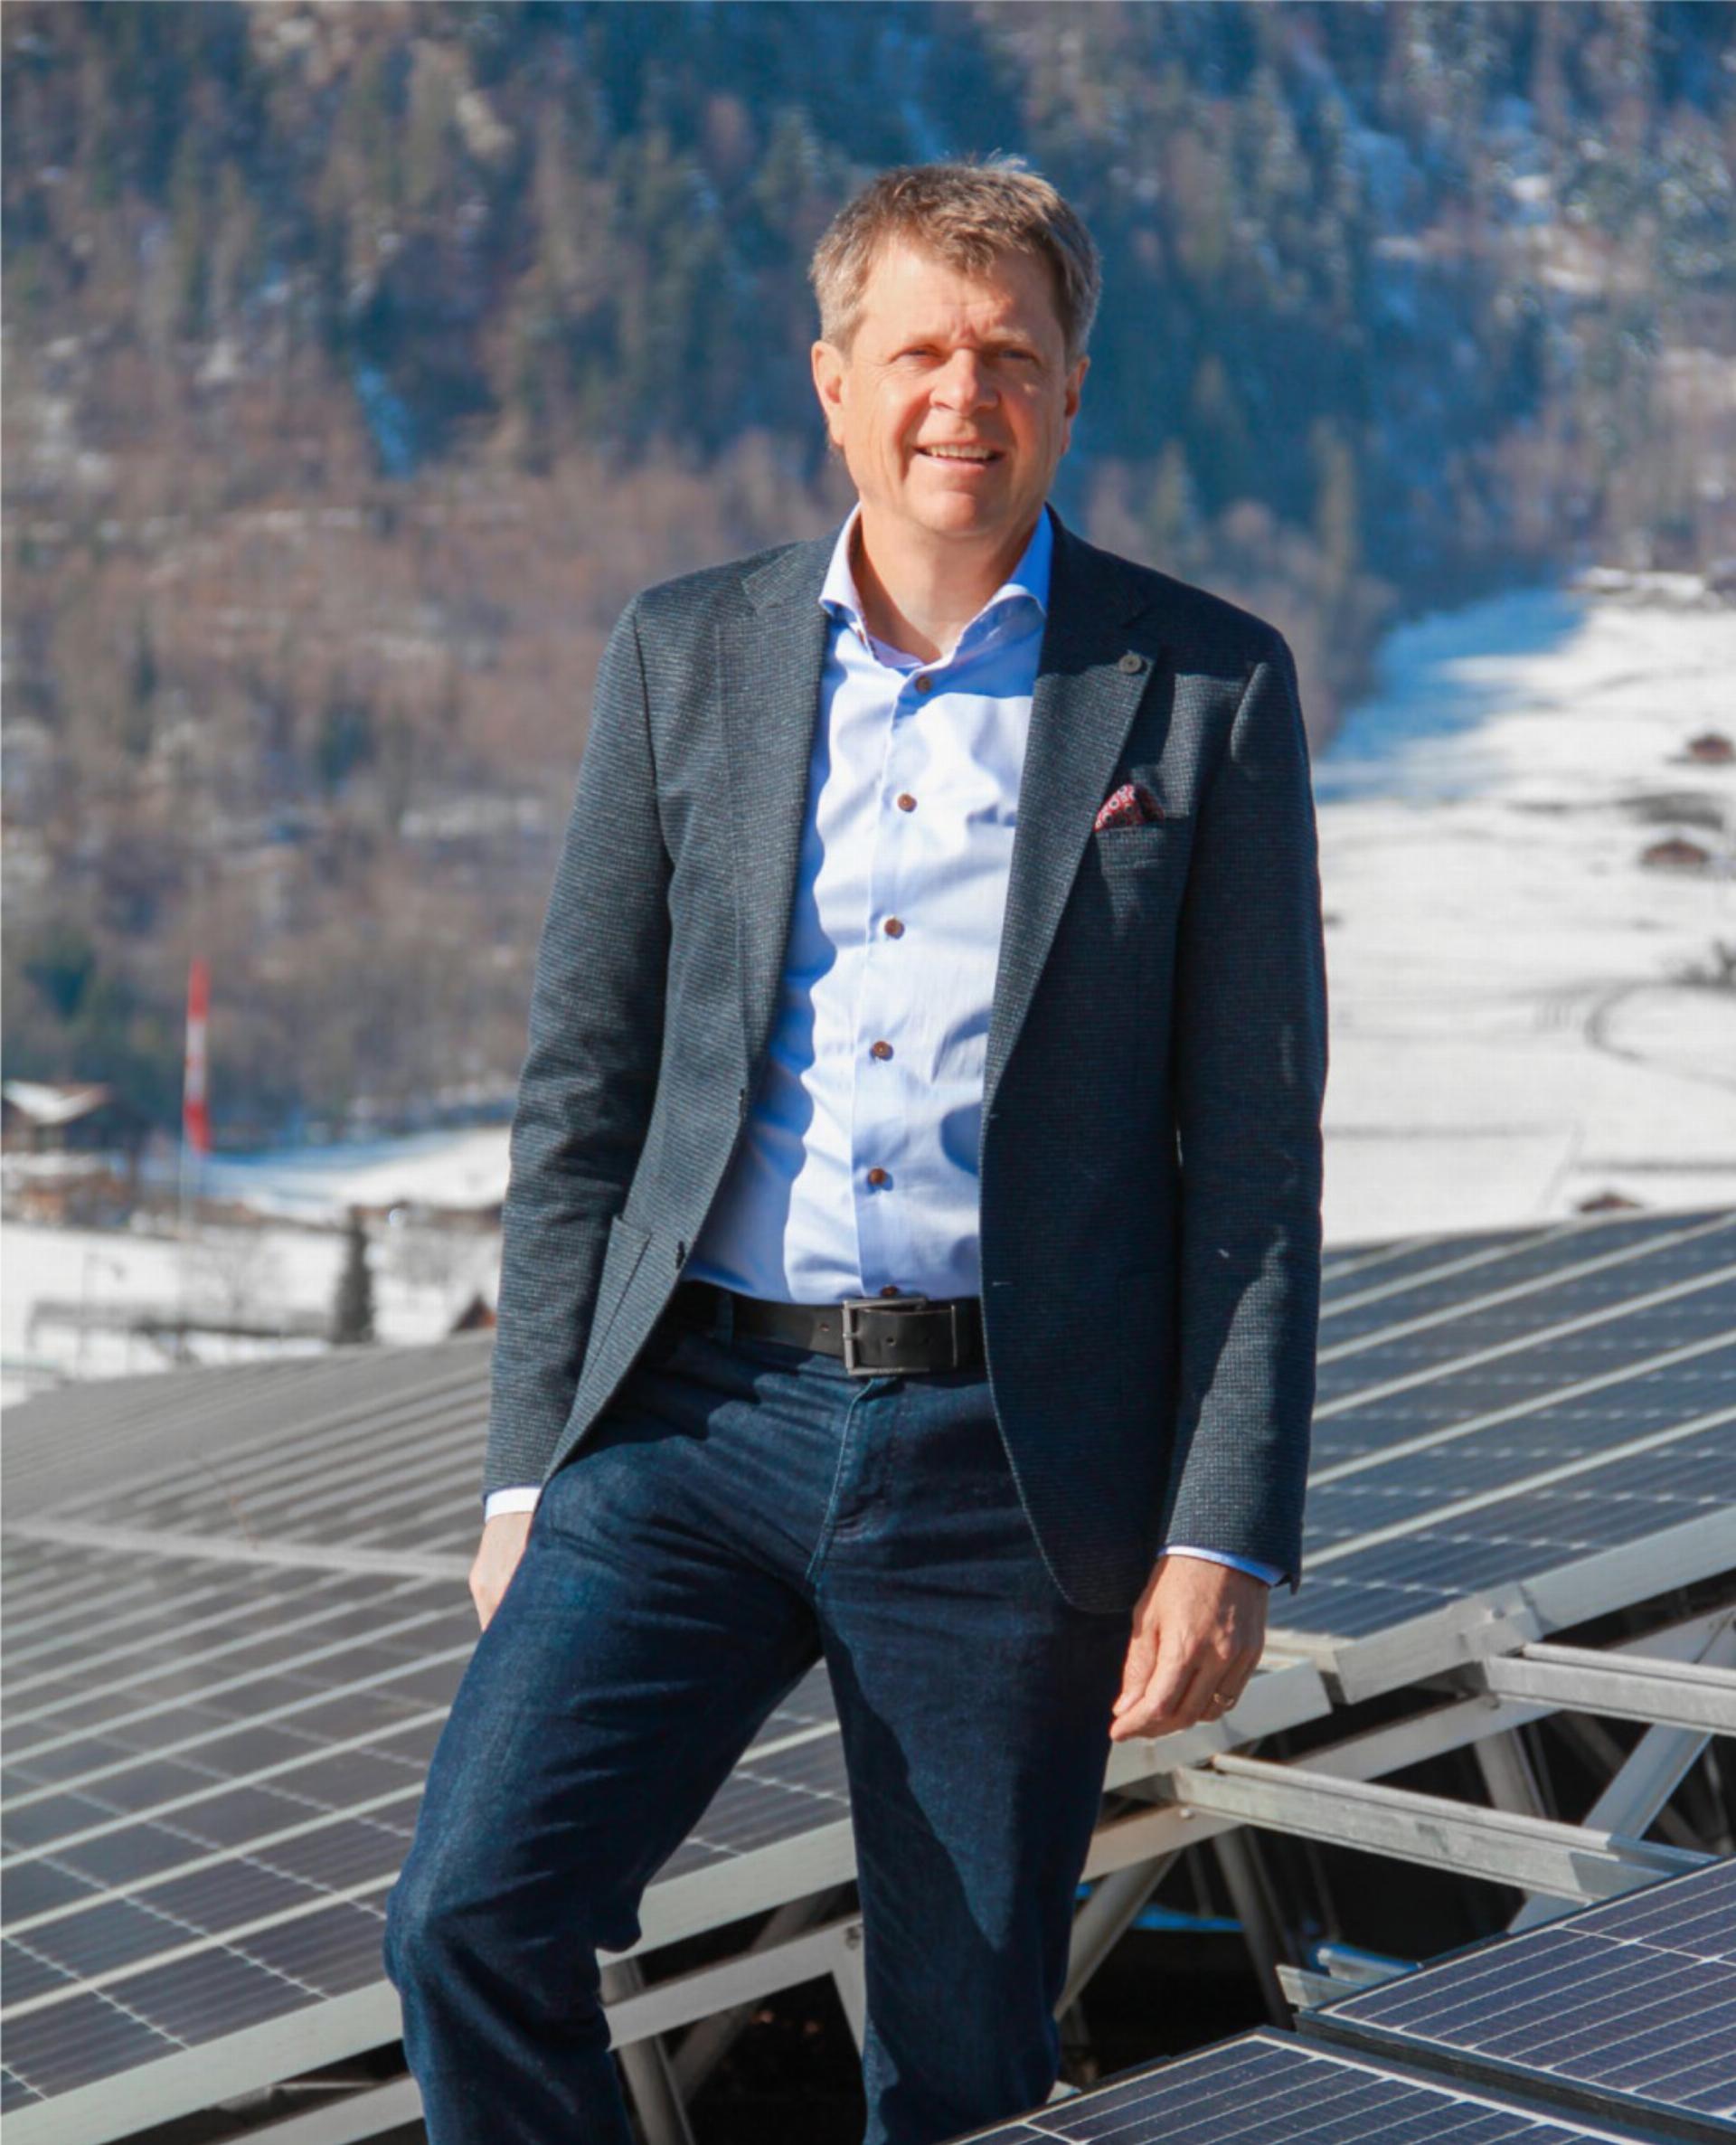 Jürg Grossen auf dem Dach seiner Frutiger Firma, das mit zahlreichen Solarpanels ausgekleidet ist. BILD: JULIAN ZAHND